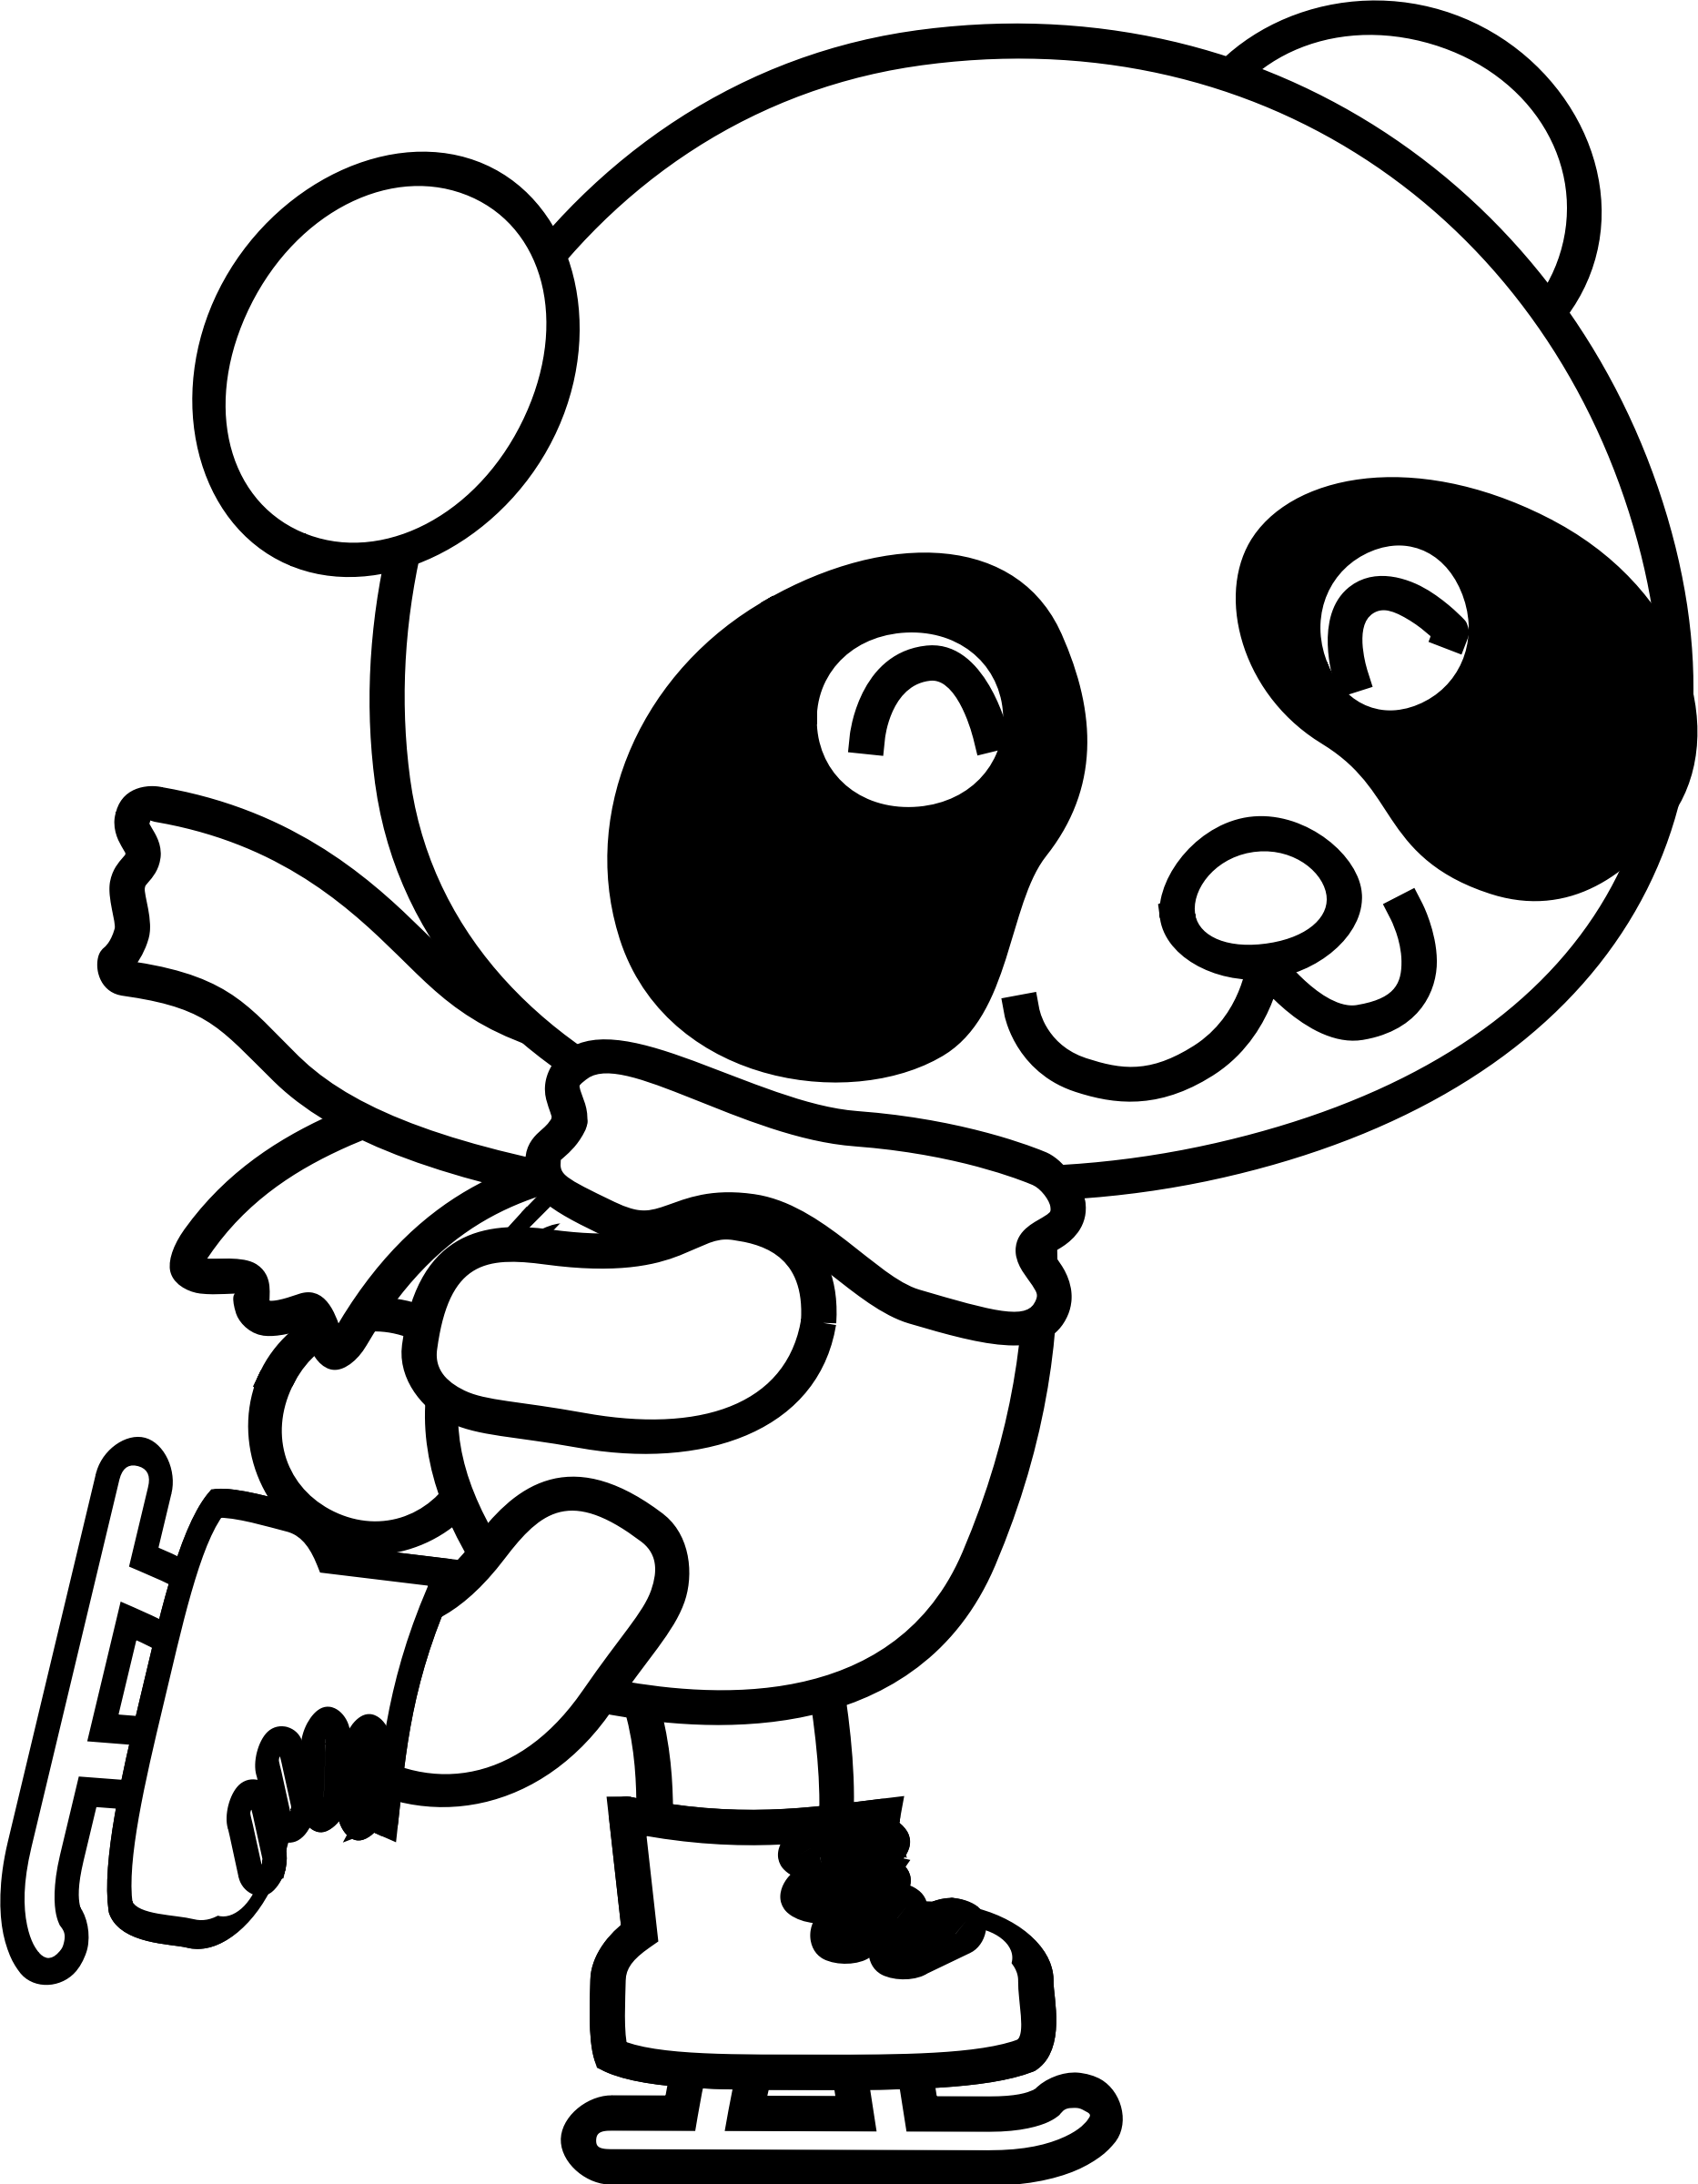 Skating panda page icons. Patriots clipart coloring